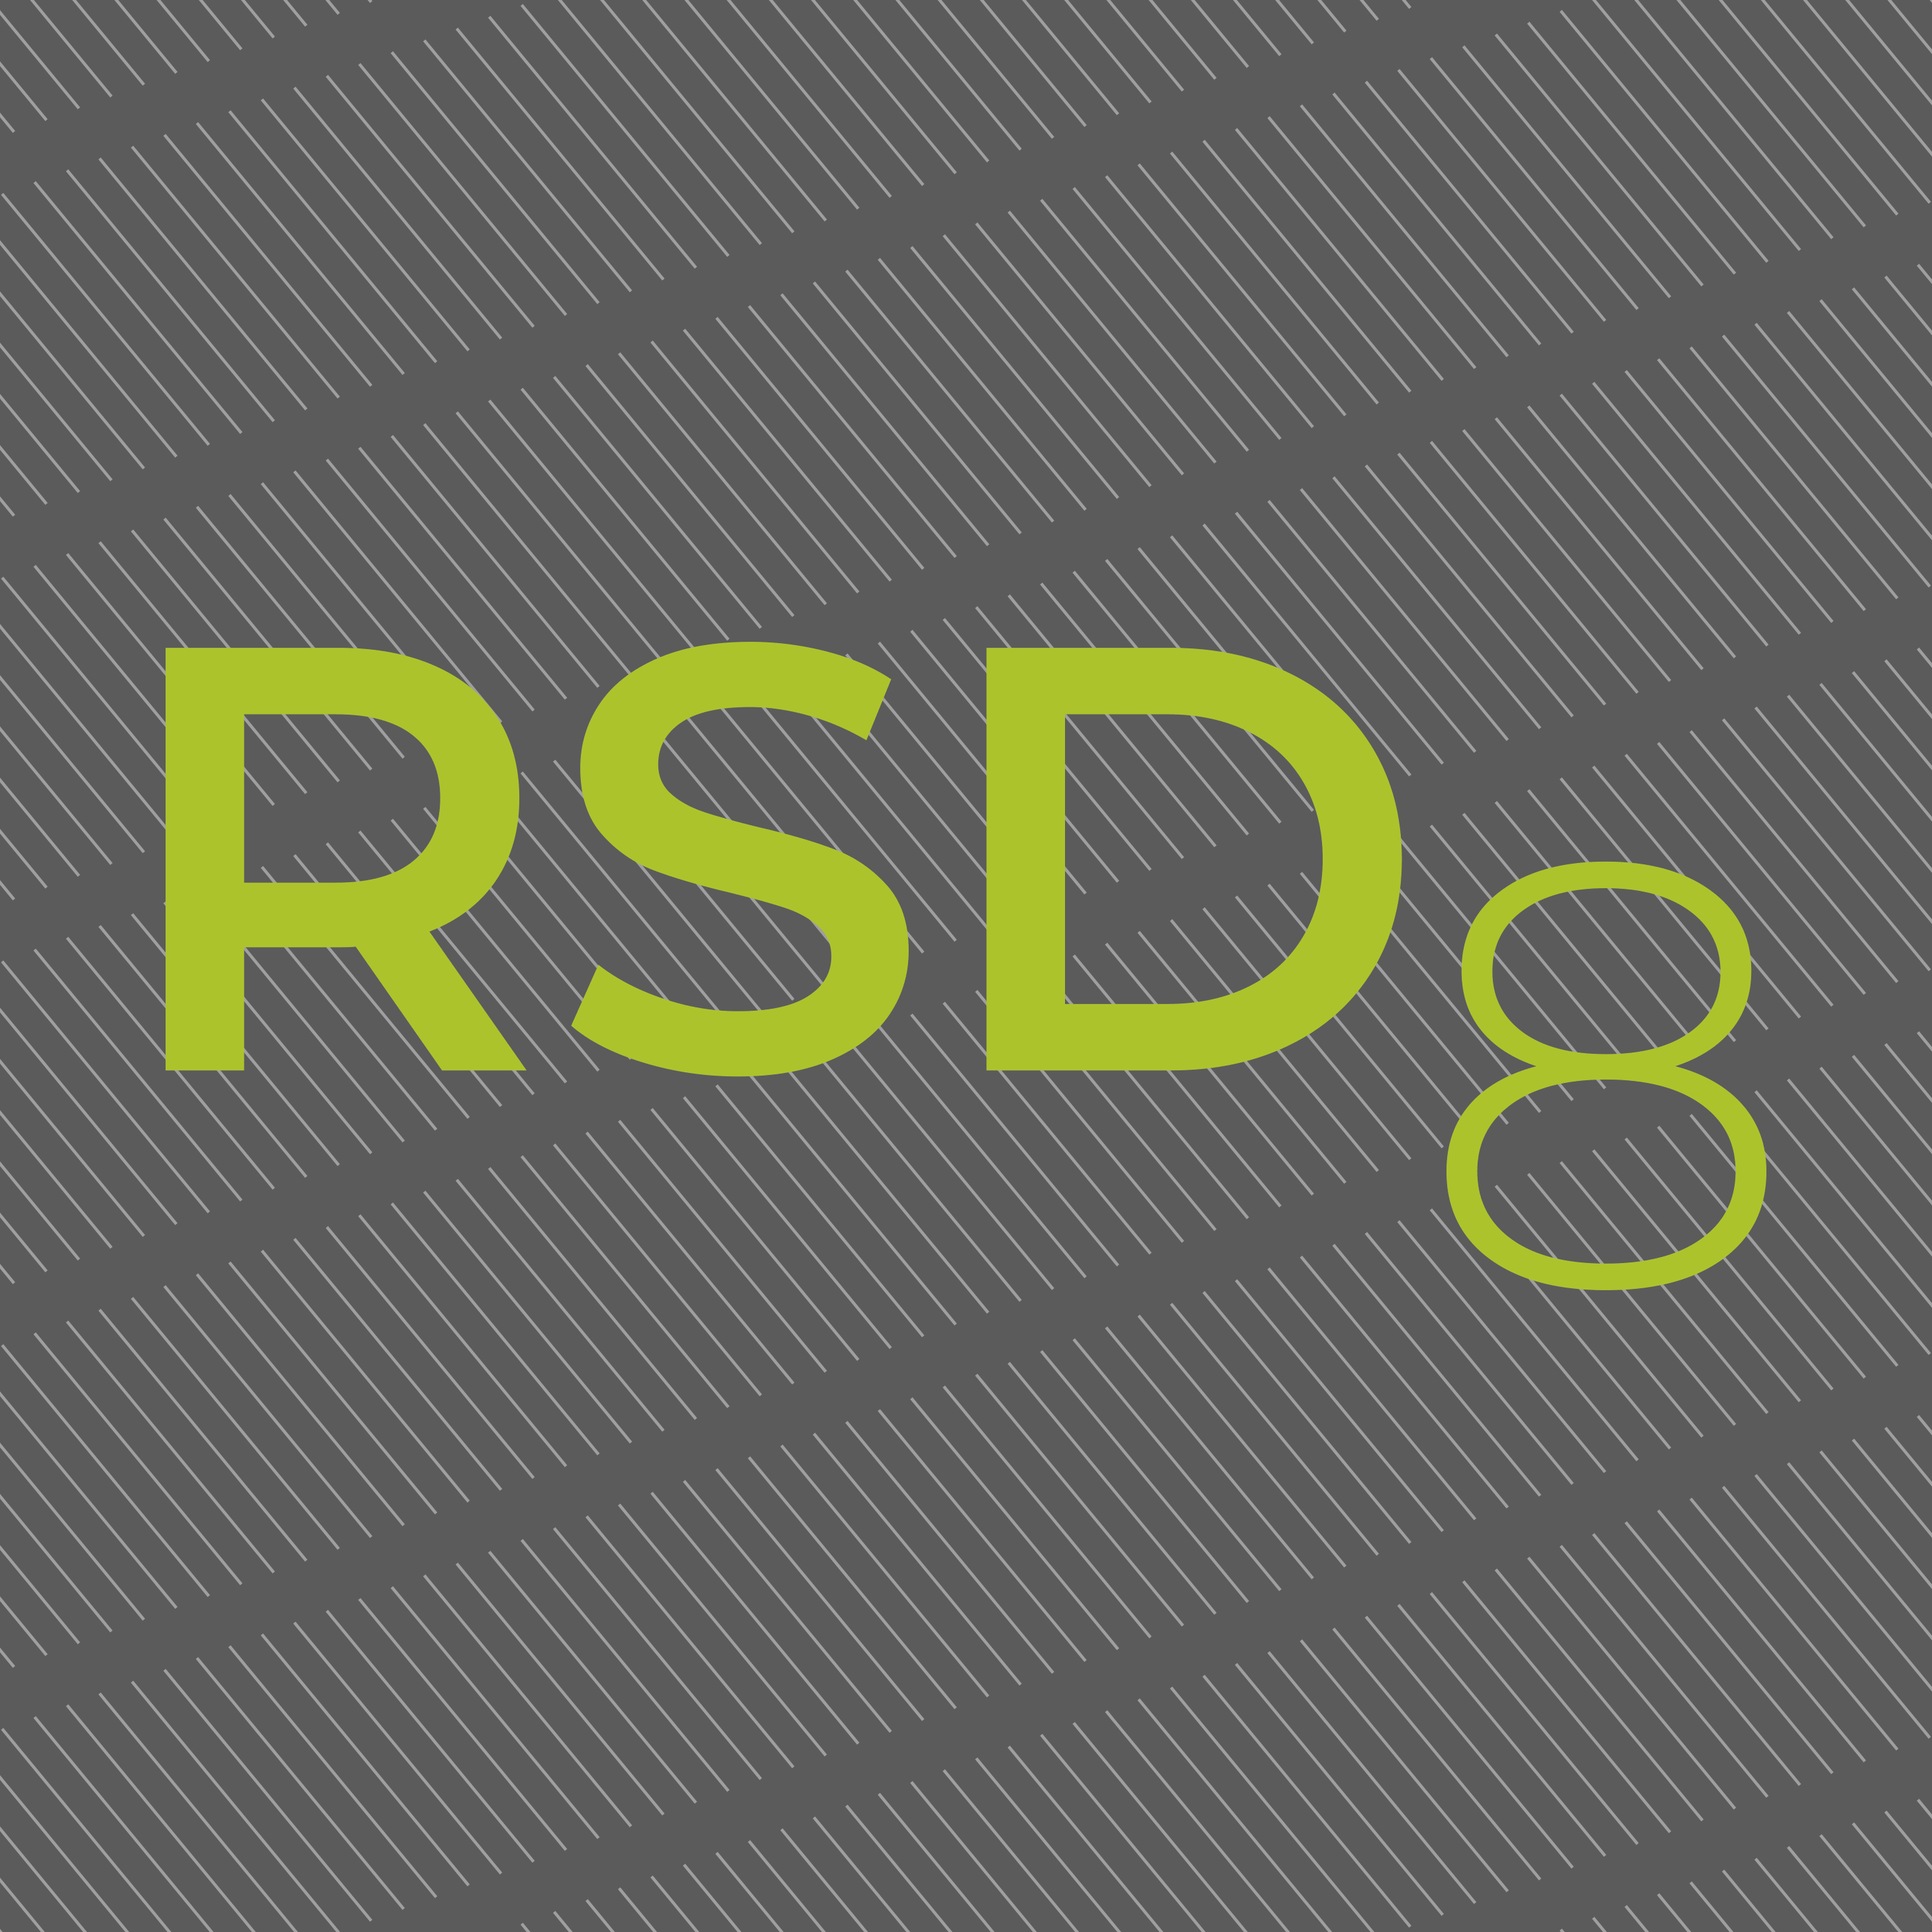 RSD8 social media